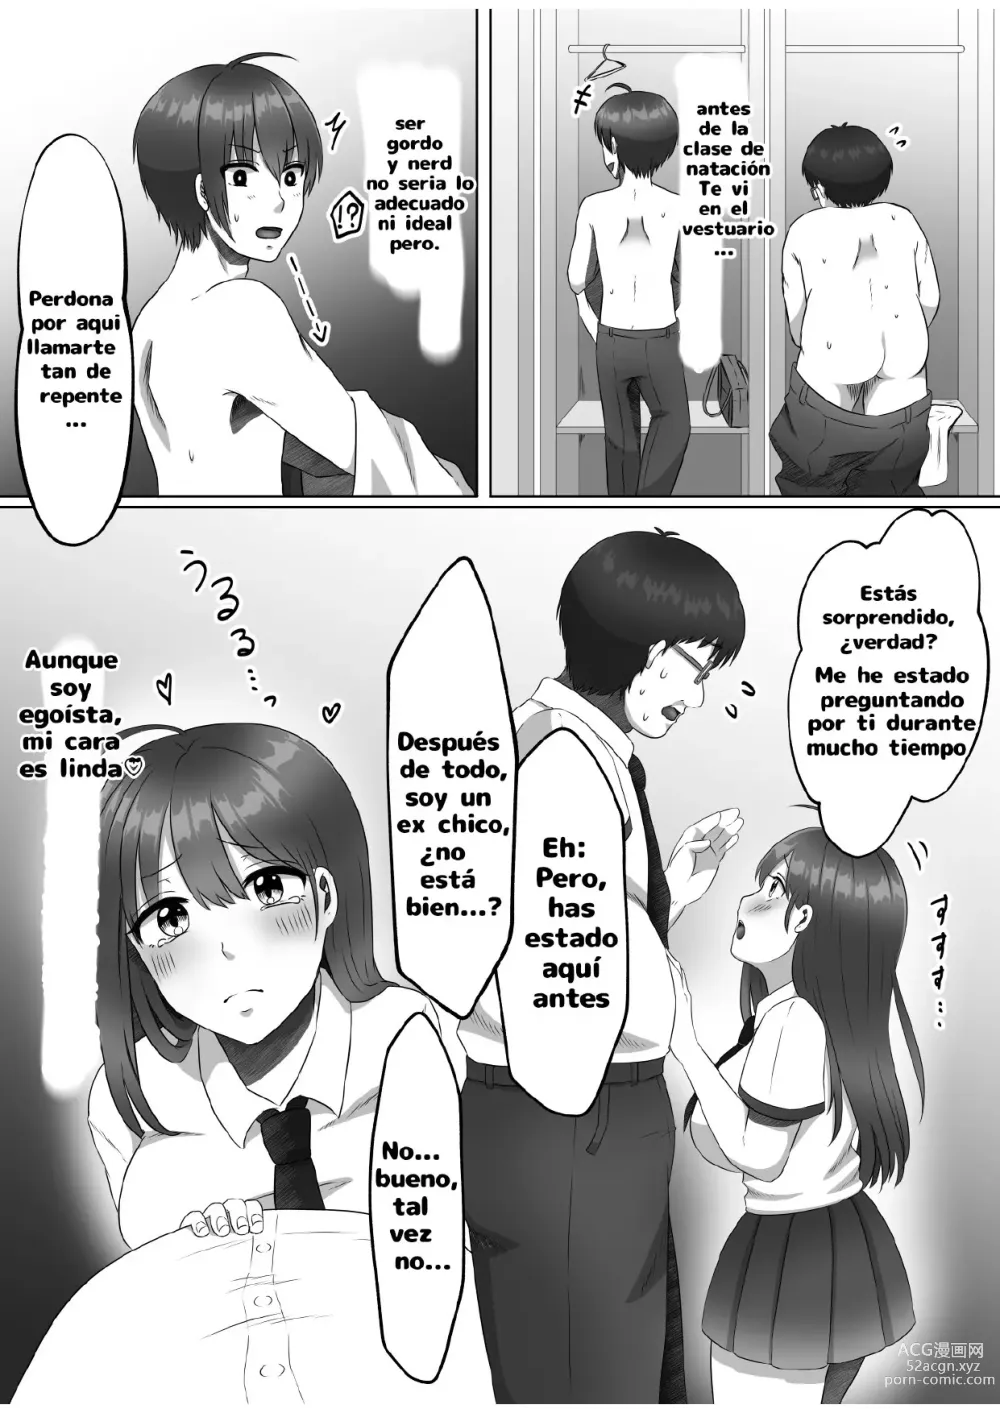 Page 17 of doujinshi ¿Porque me convertí en una mujer?